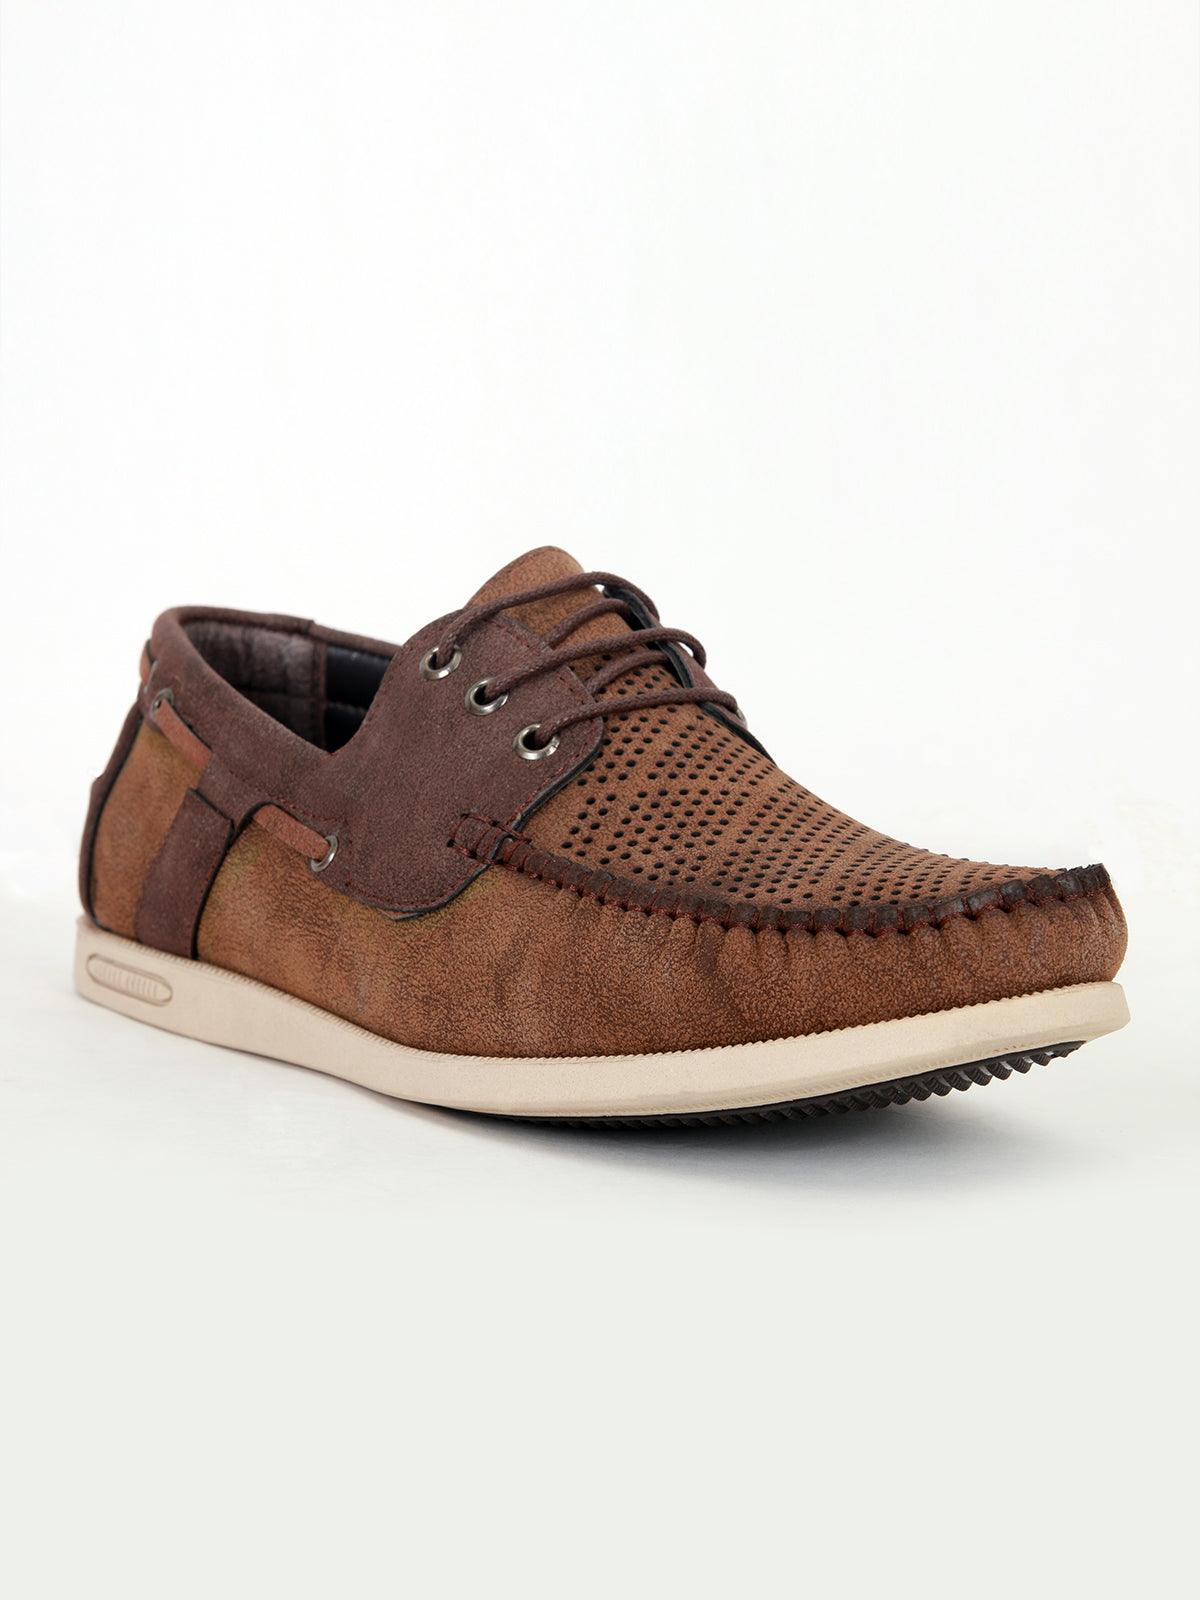 Men's Shoe - F-AMS-C16-33021